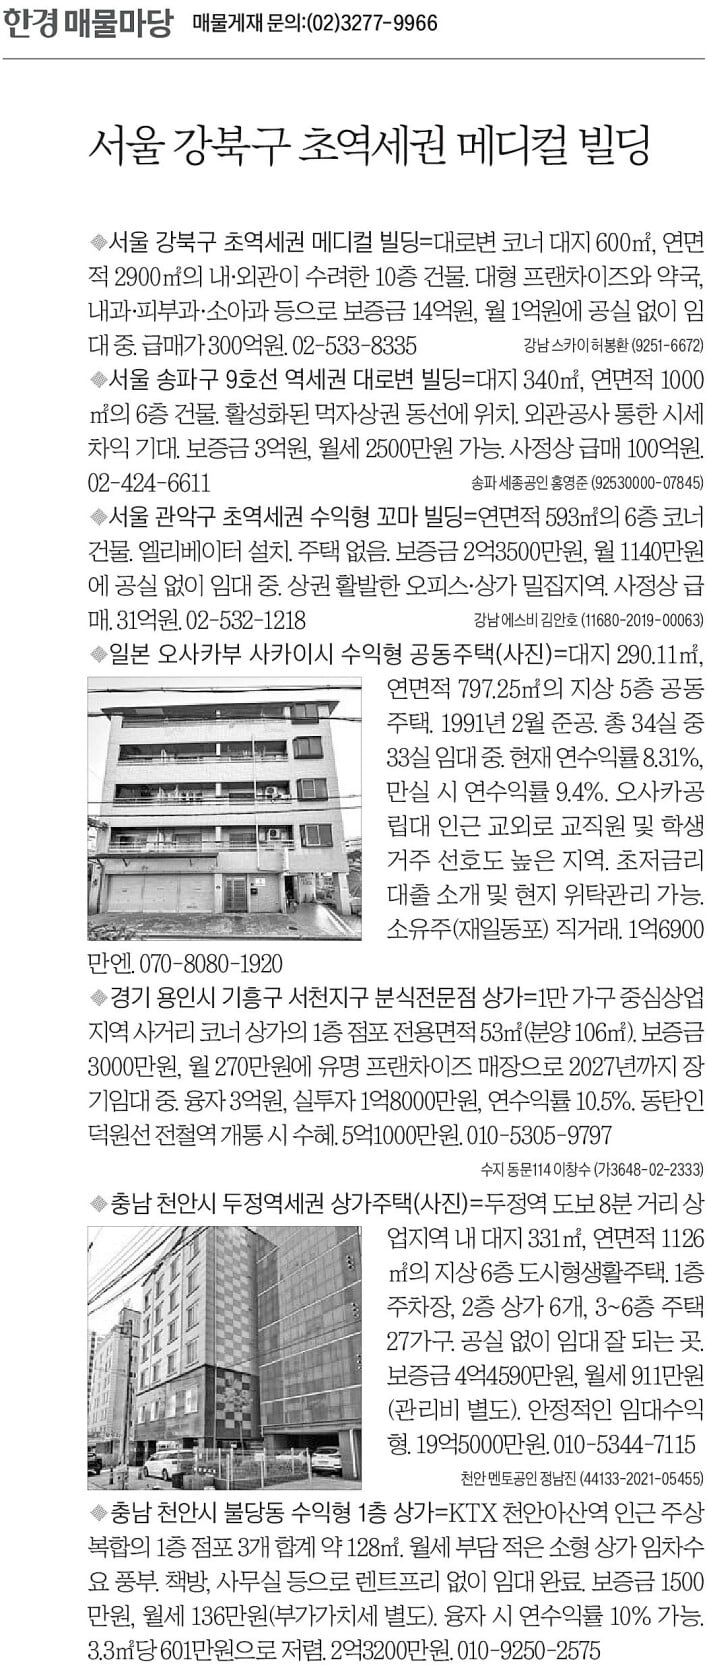 [한경 매물마당] 강북구 초역세권 메디컬 빌딩 등 7건